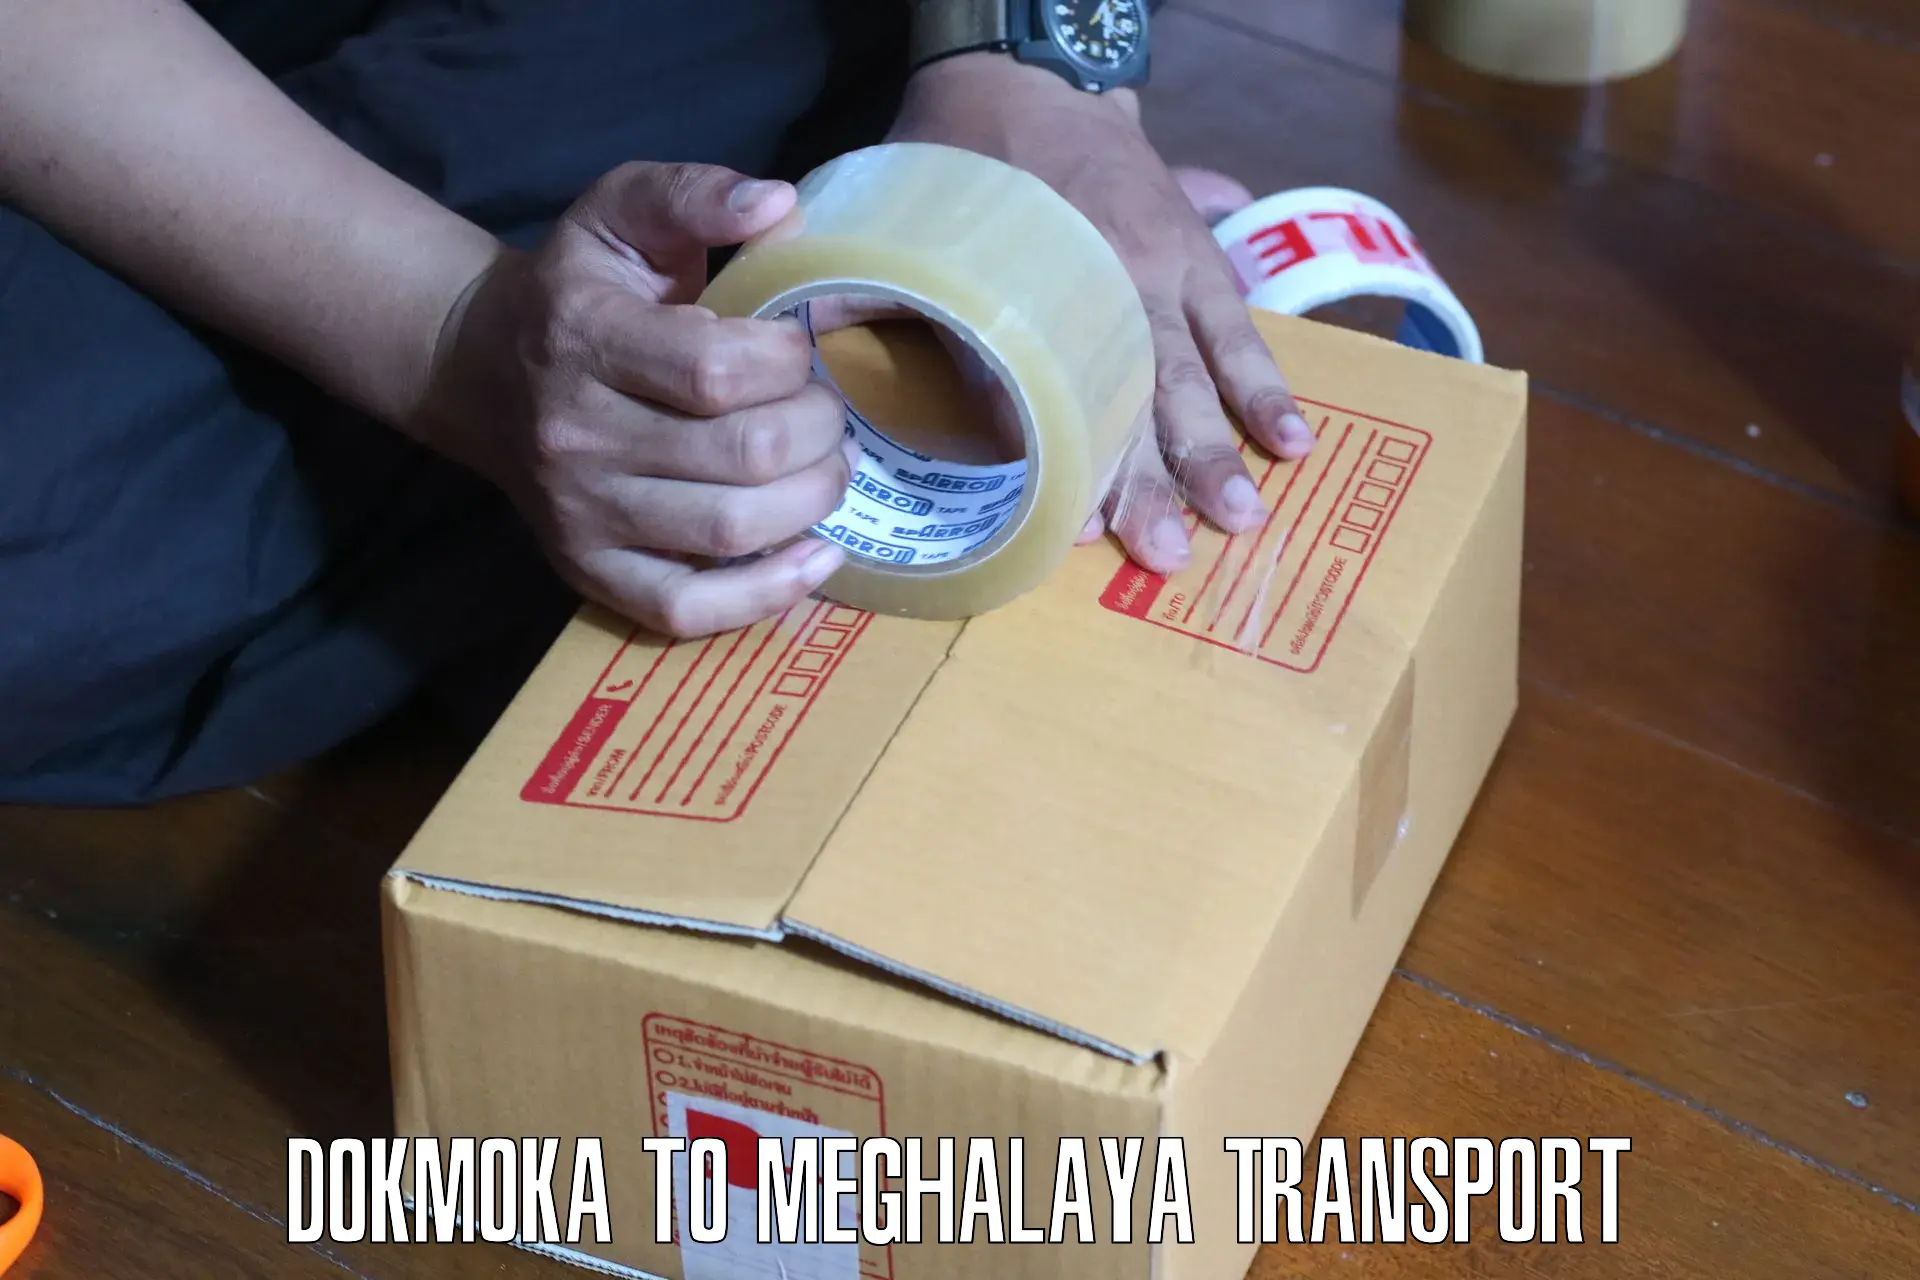 Online transport service Dokmoka to Umsaw